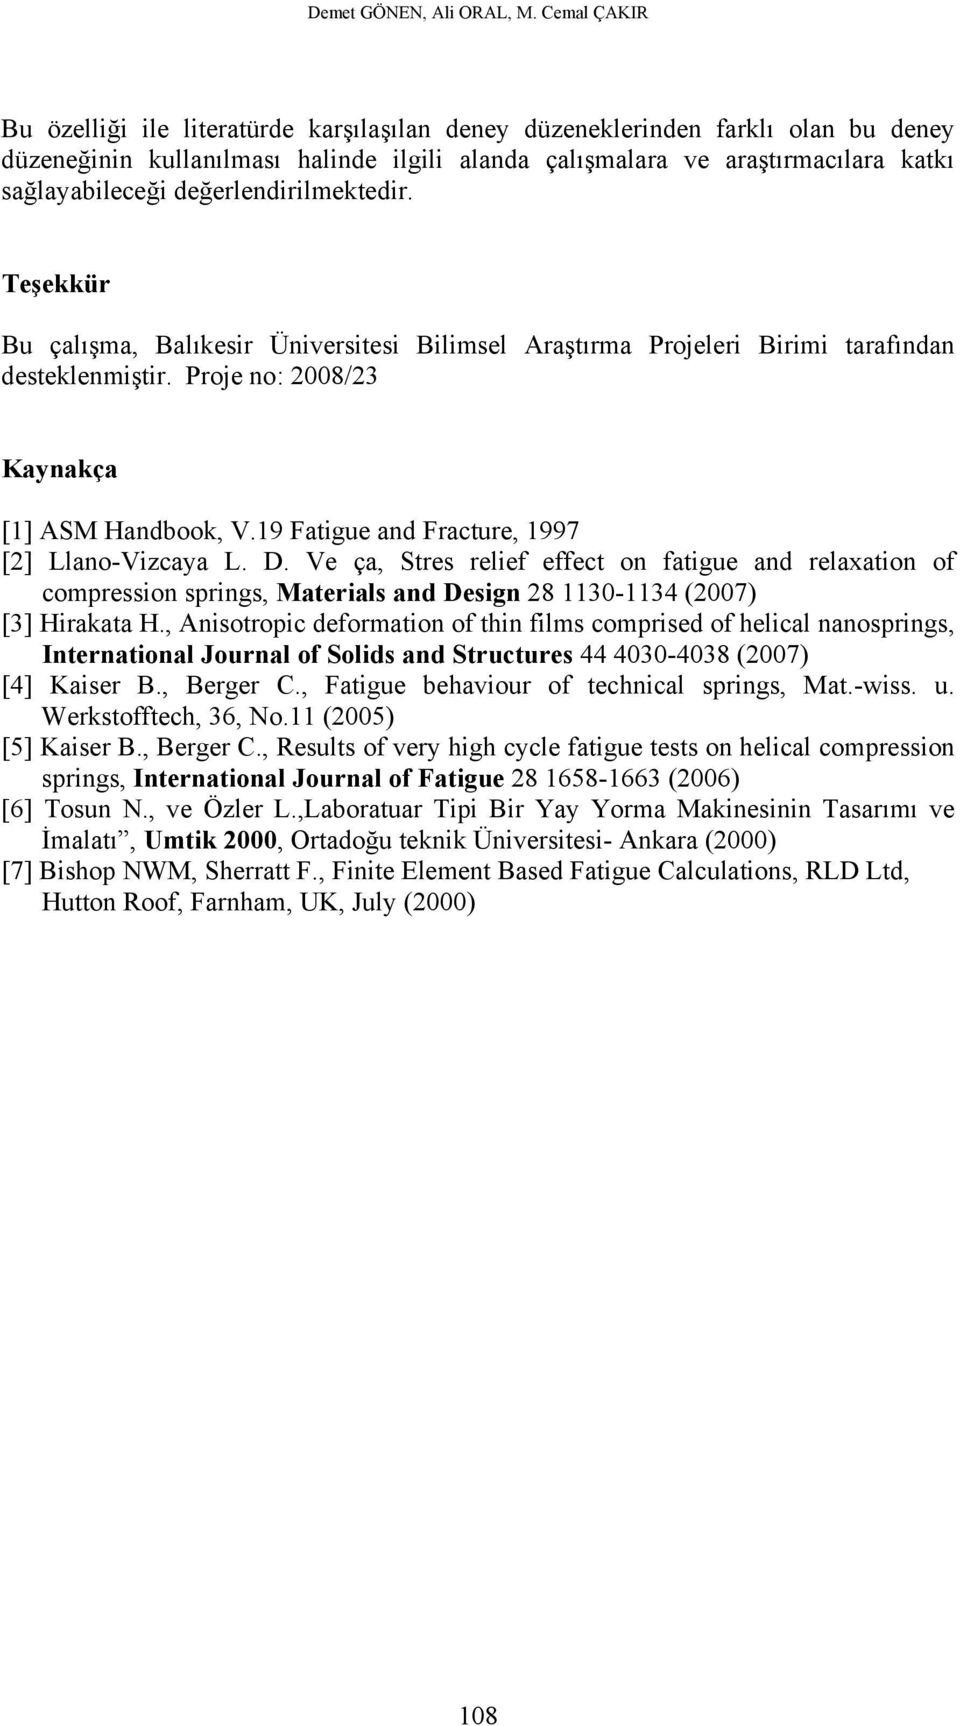 değerlendirilmektedir. Teşekkür Bu çalışma, Balıkesir Üniversitesi Bilimsel Araştırma Prjeleri Birimi tarafından desteklenmiştir. Prje n: 008/3 Kaynakça [1] ASM Handbk, V.